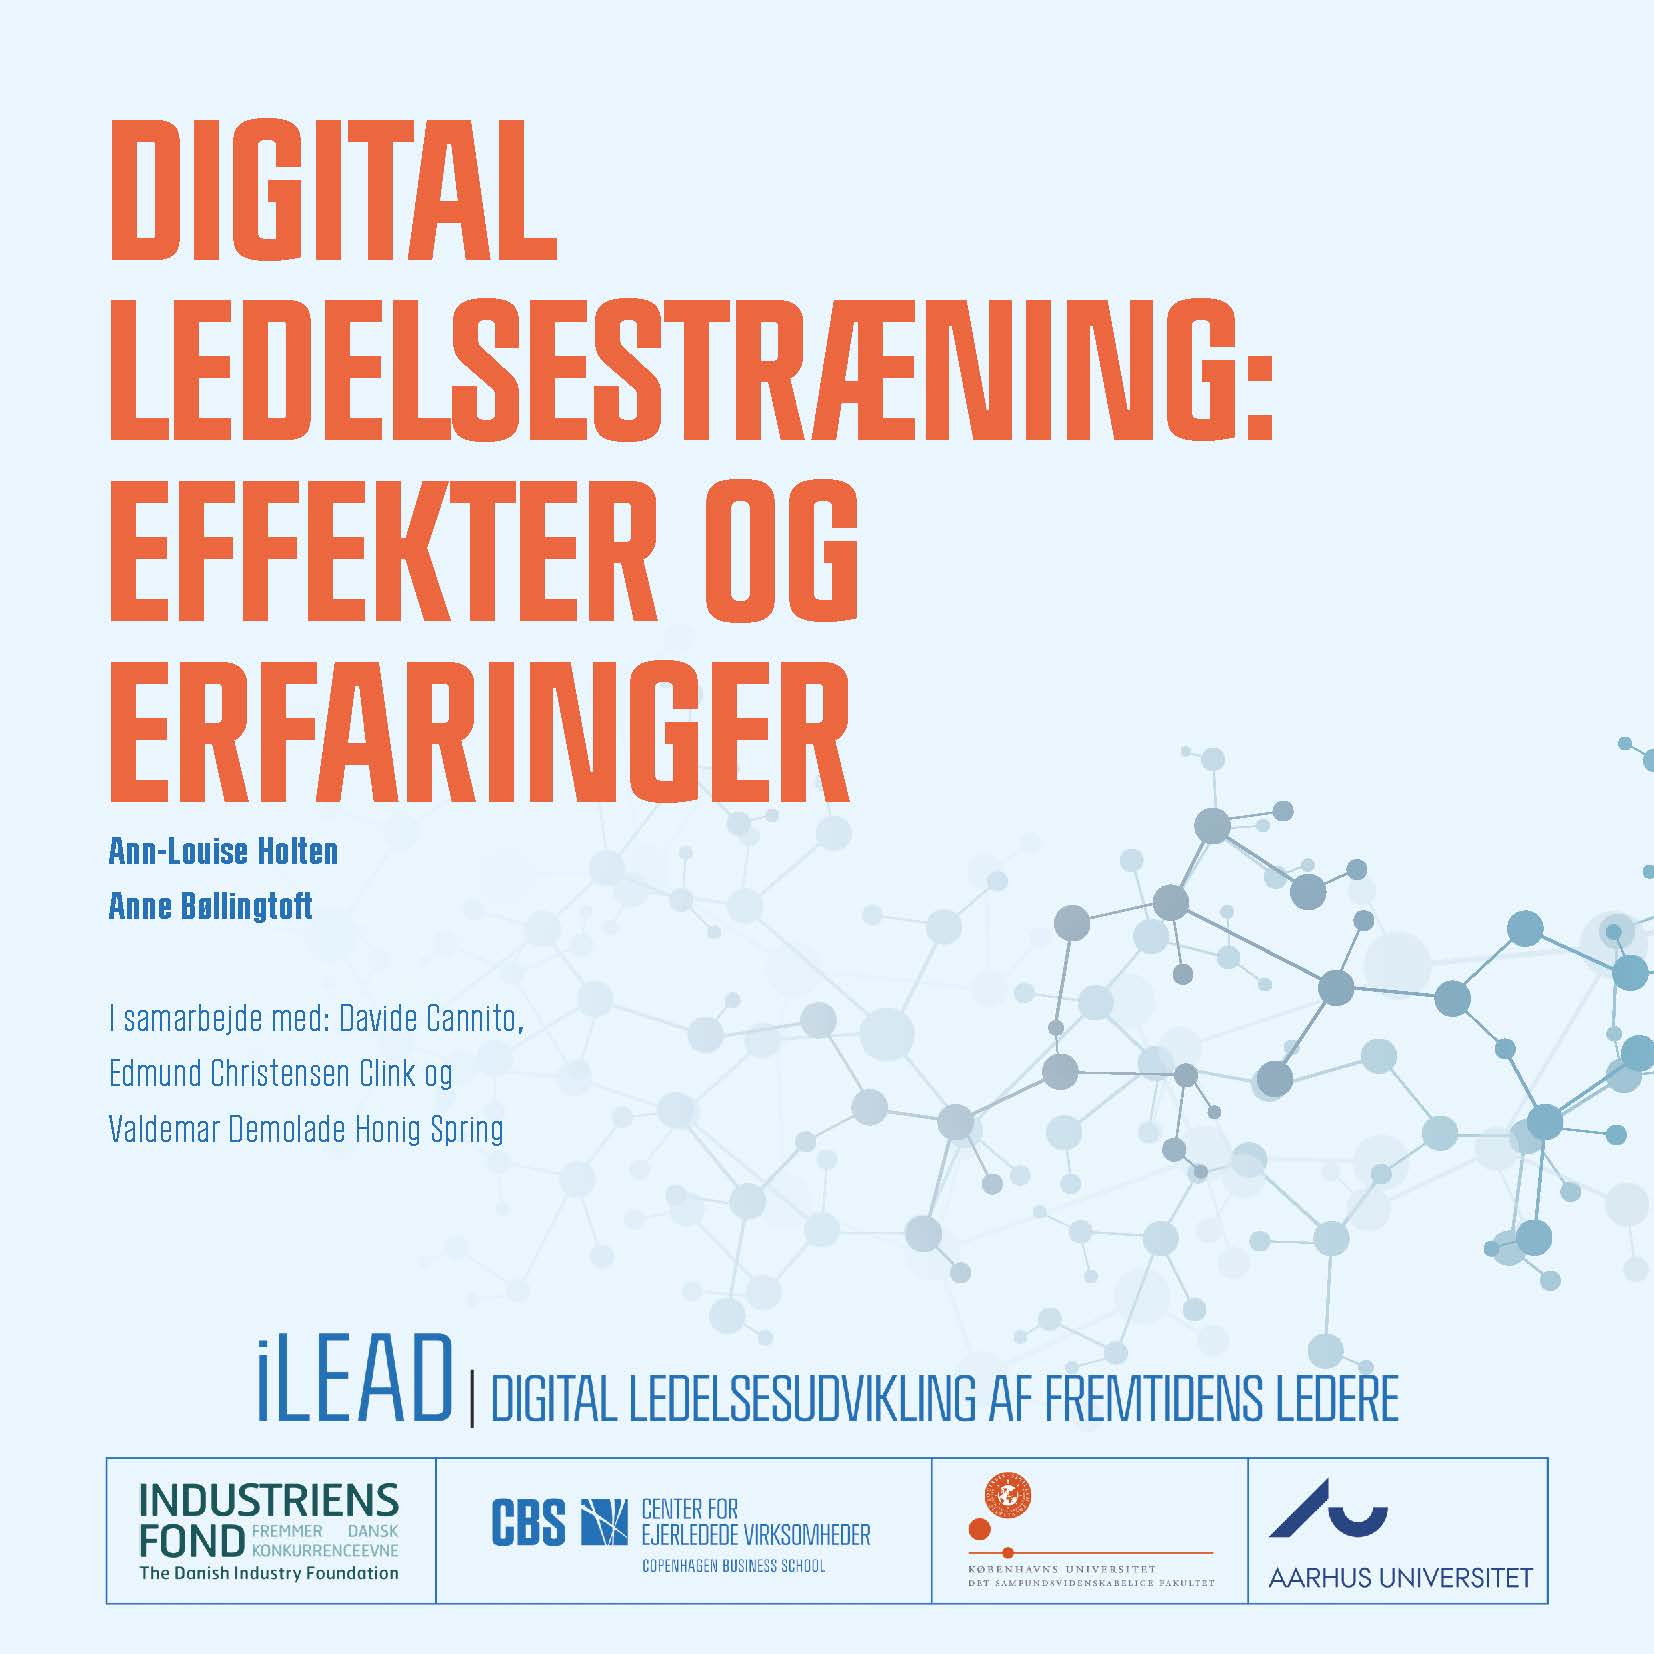 Billede af forsiden til rapporten: Digital ledelsestræning - effekter og erfaringen